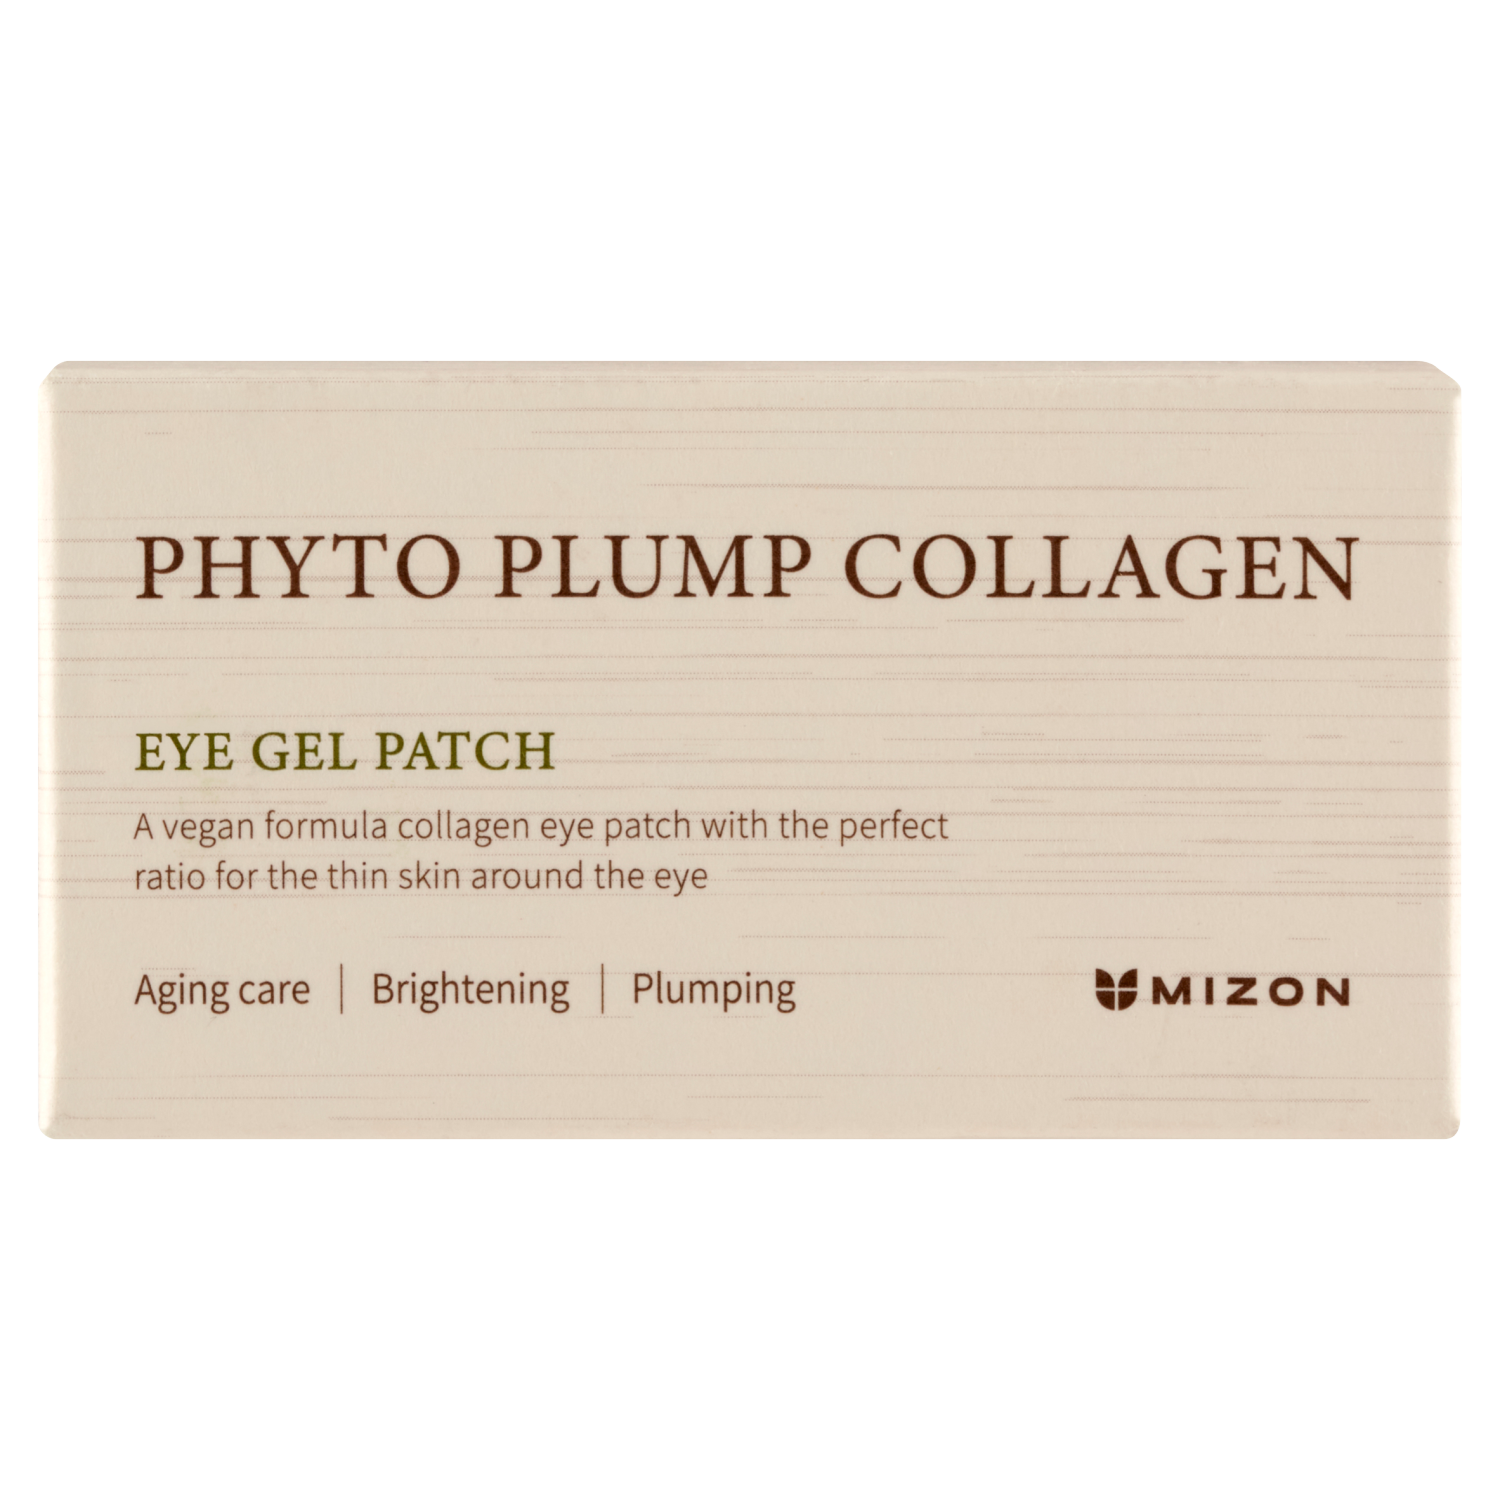 Лифтинг-патчи для глаз Mizon Phyto Plump Collagen, 60 штук лифтинг патчи для глаз mizon phyto plump collagen 60 штук